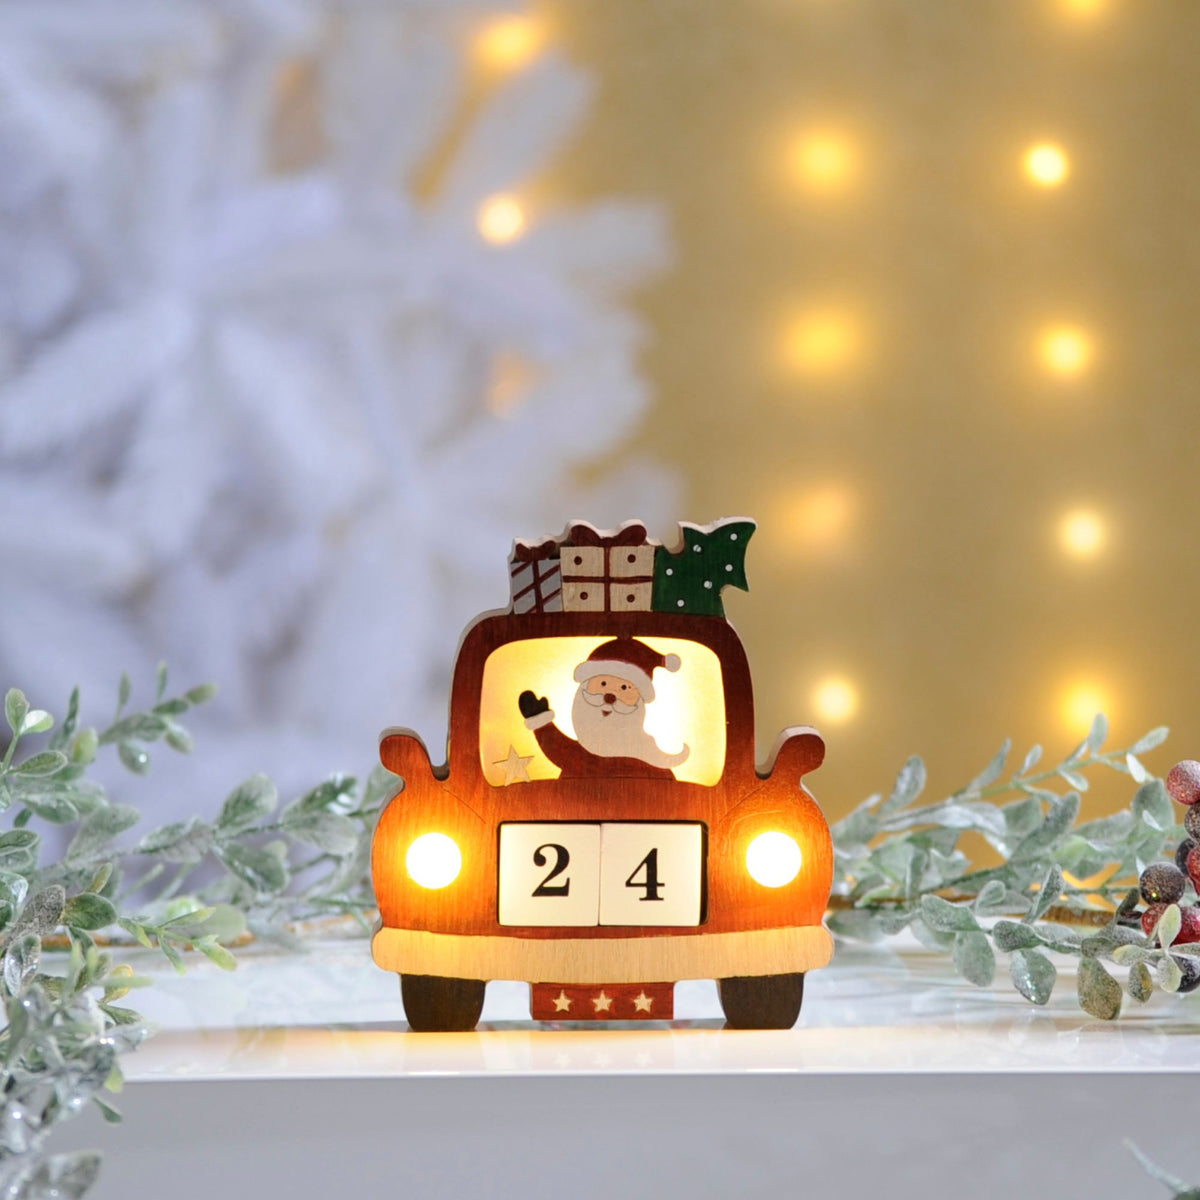 Christmas Car Countdown Advent Calendar with Santa